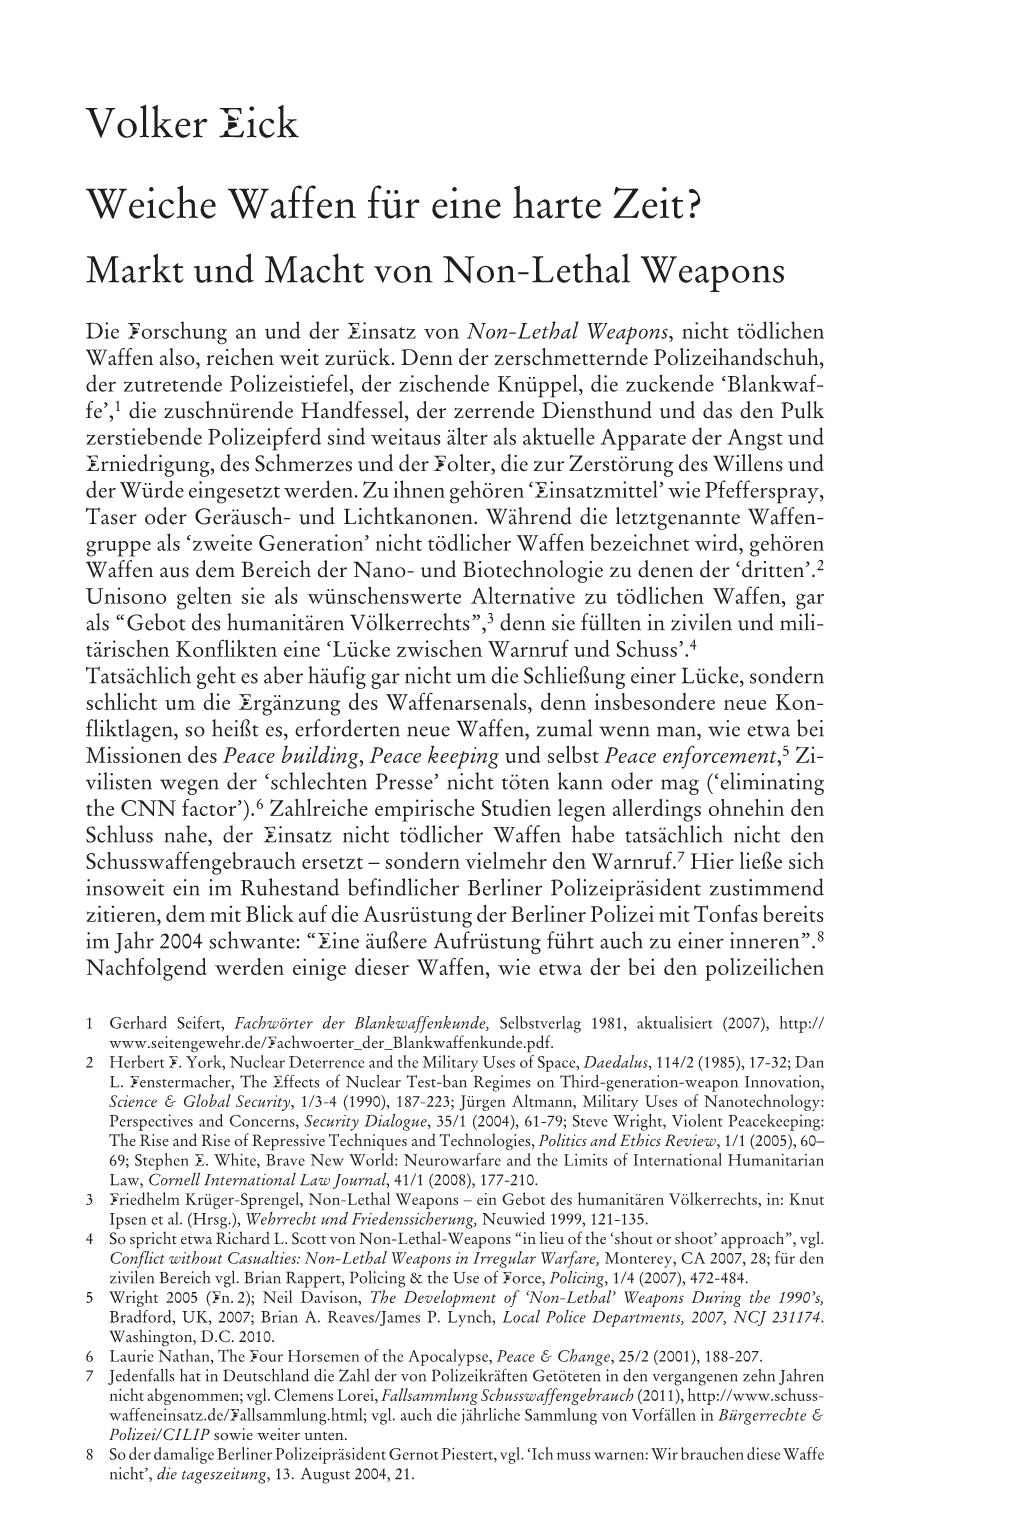 Markt Und Macht Von Non-Lethal Weapons